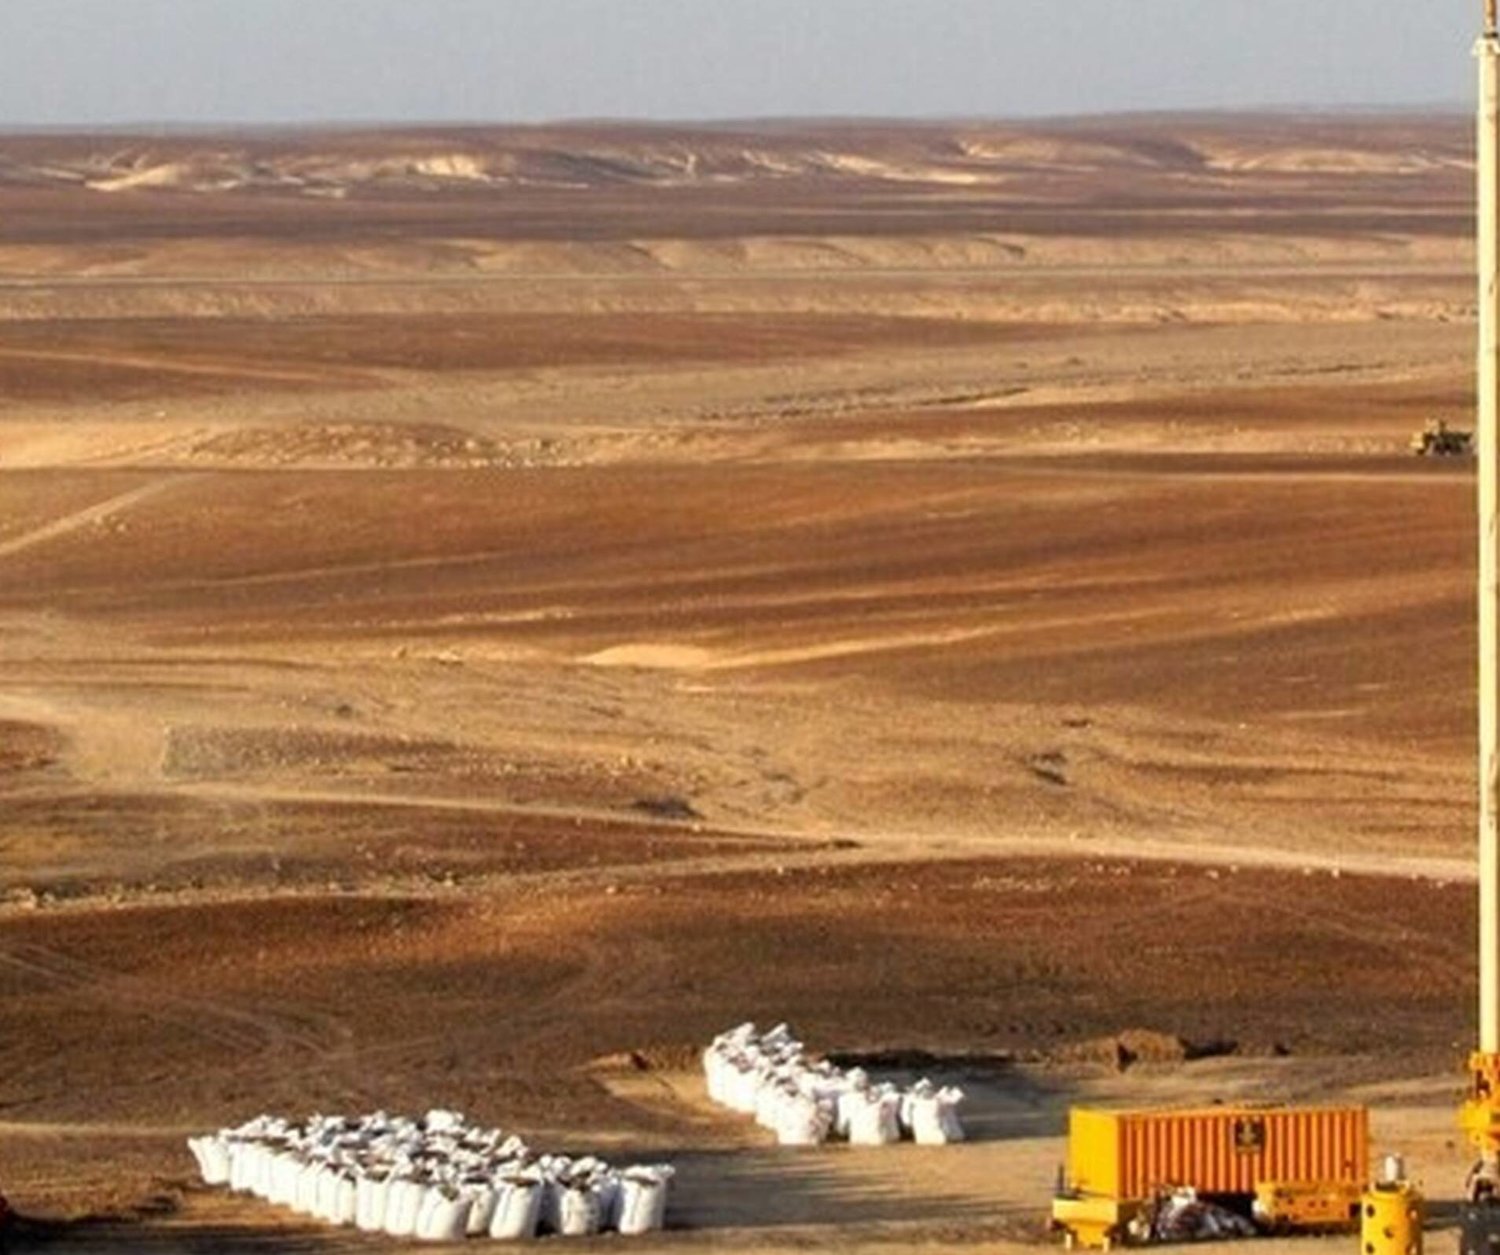 صحراء الأردن التي قد تحتوي على الزيت الصخري (غيتي)